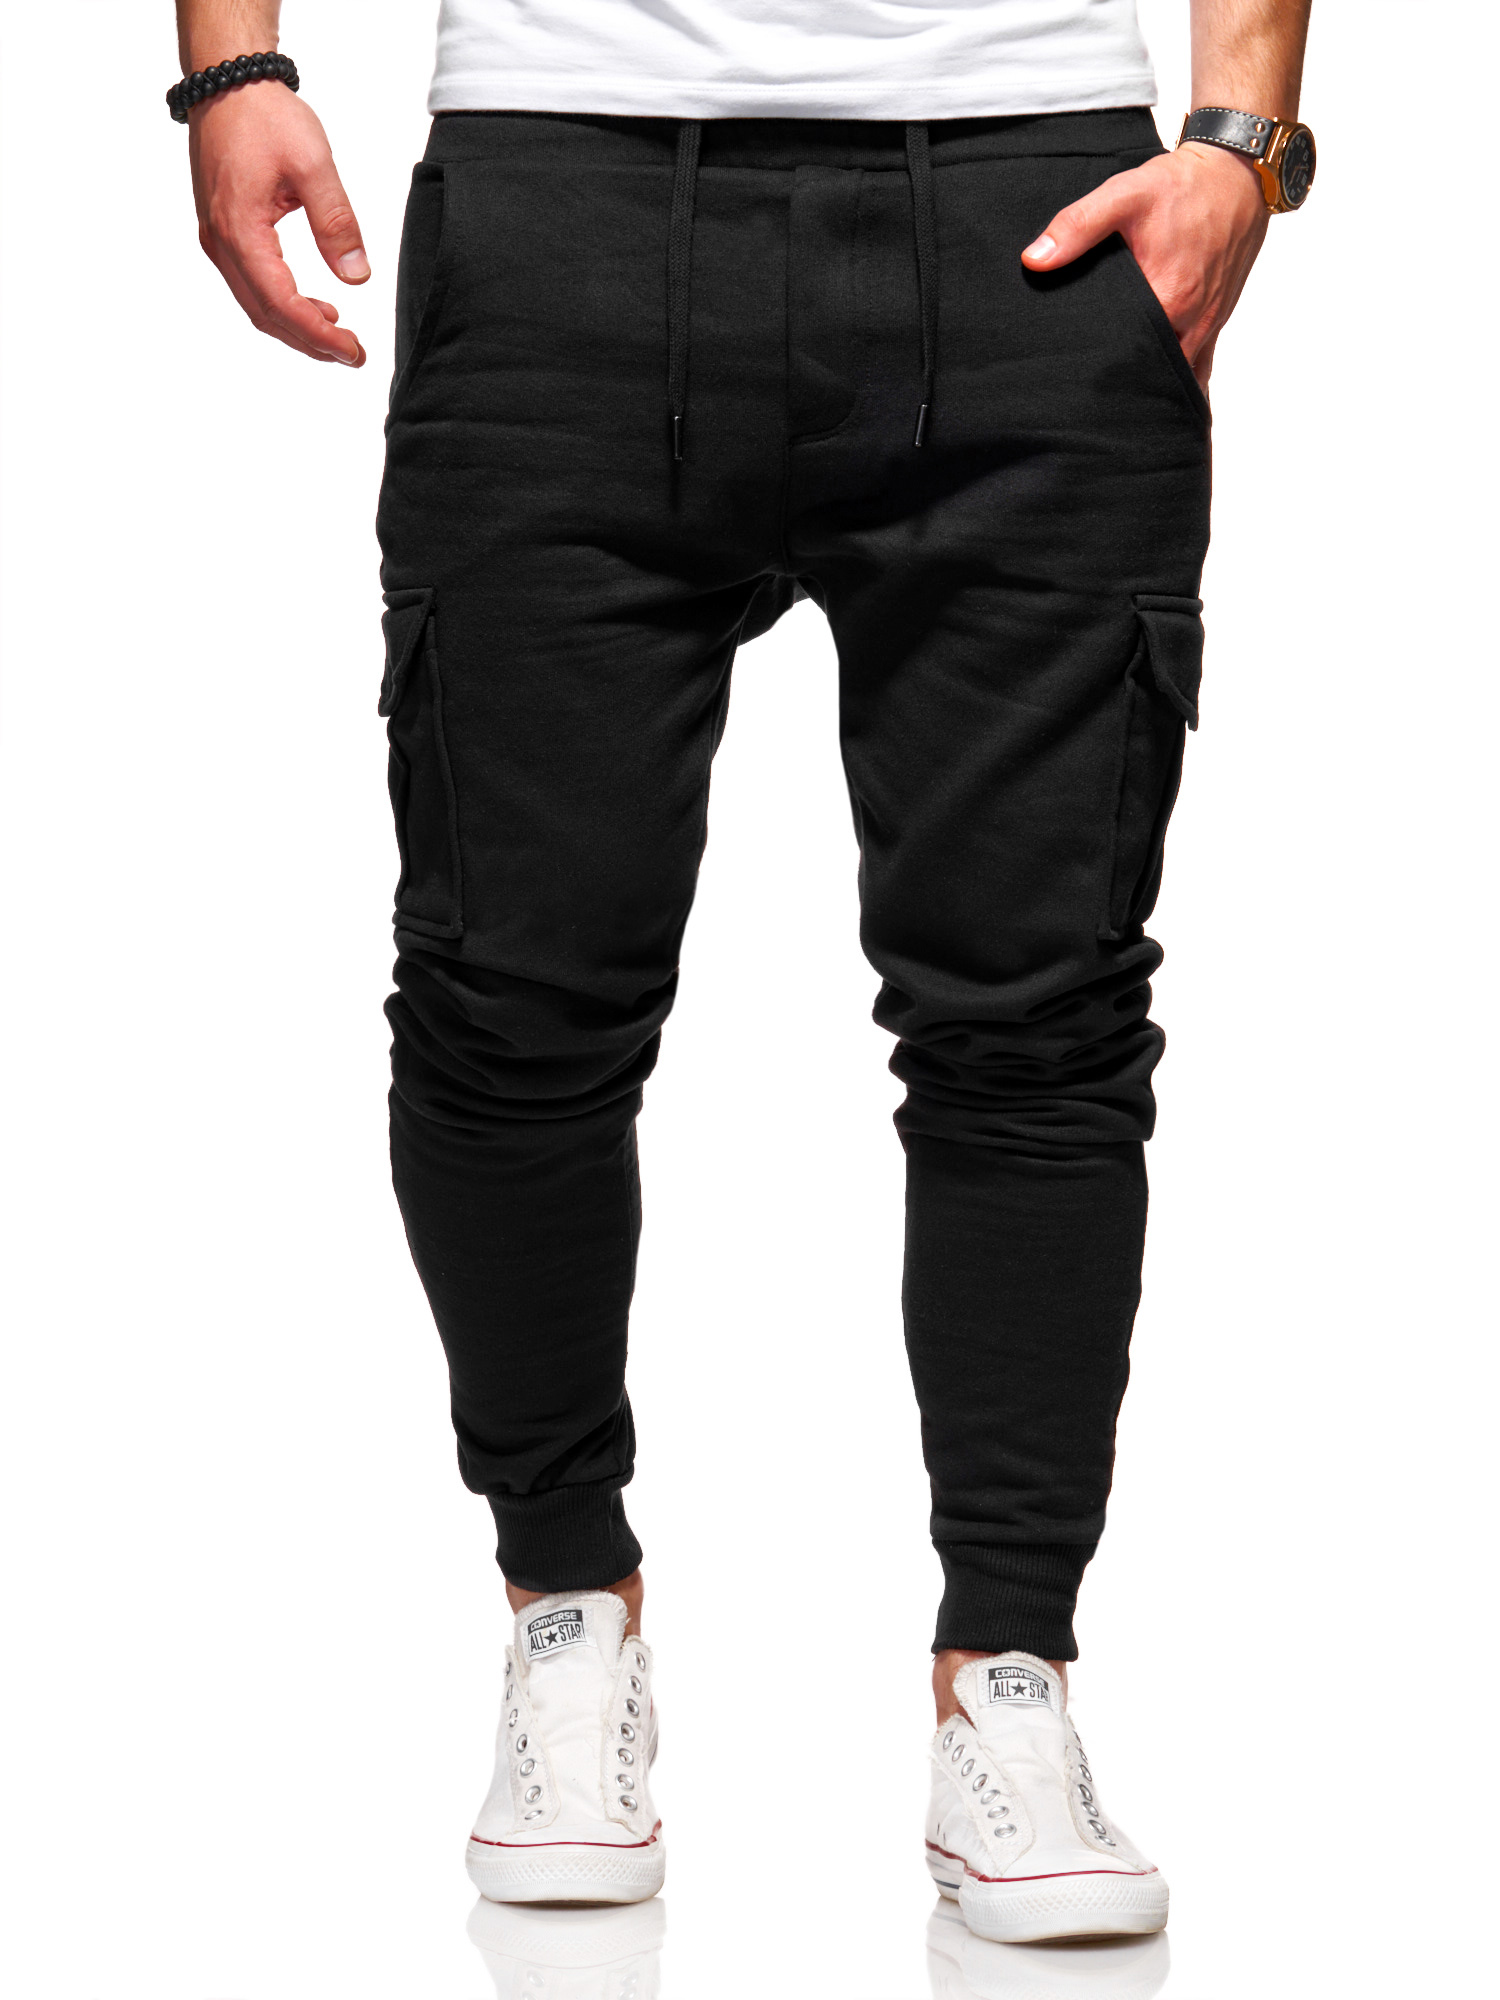 Тканевые брюки behype Jogging Combat, черный